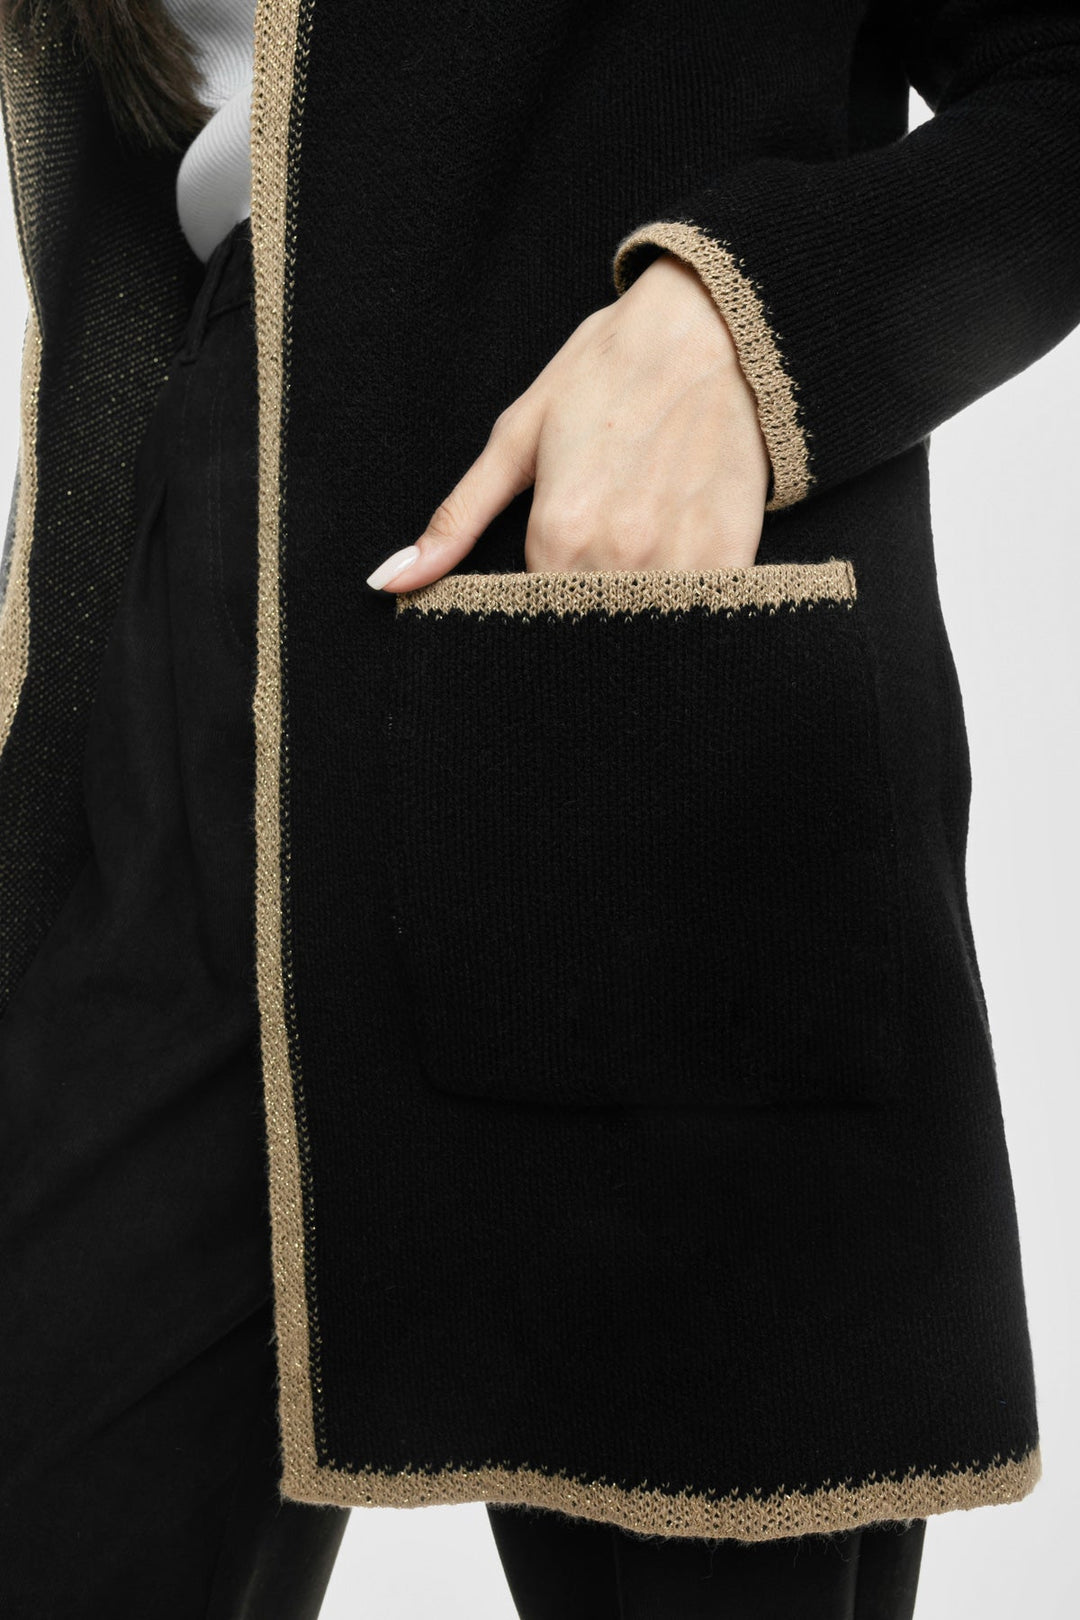 Ζακέτα πλεκτή με κουκούλα και χρυσές λεπτομέριες Figaro Fashion - A Collection Boutique